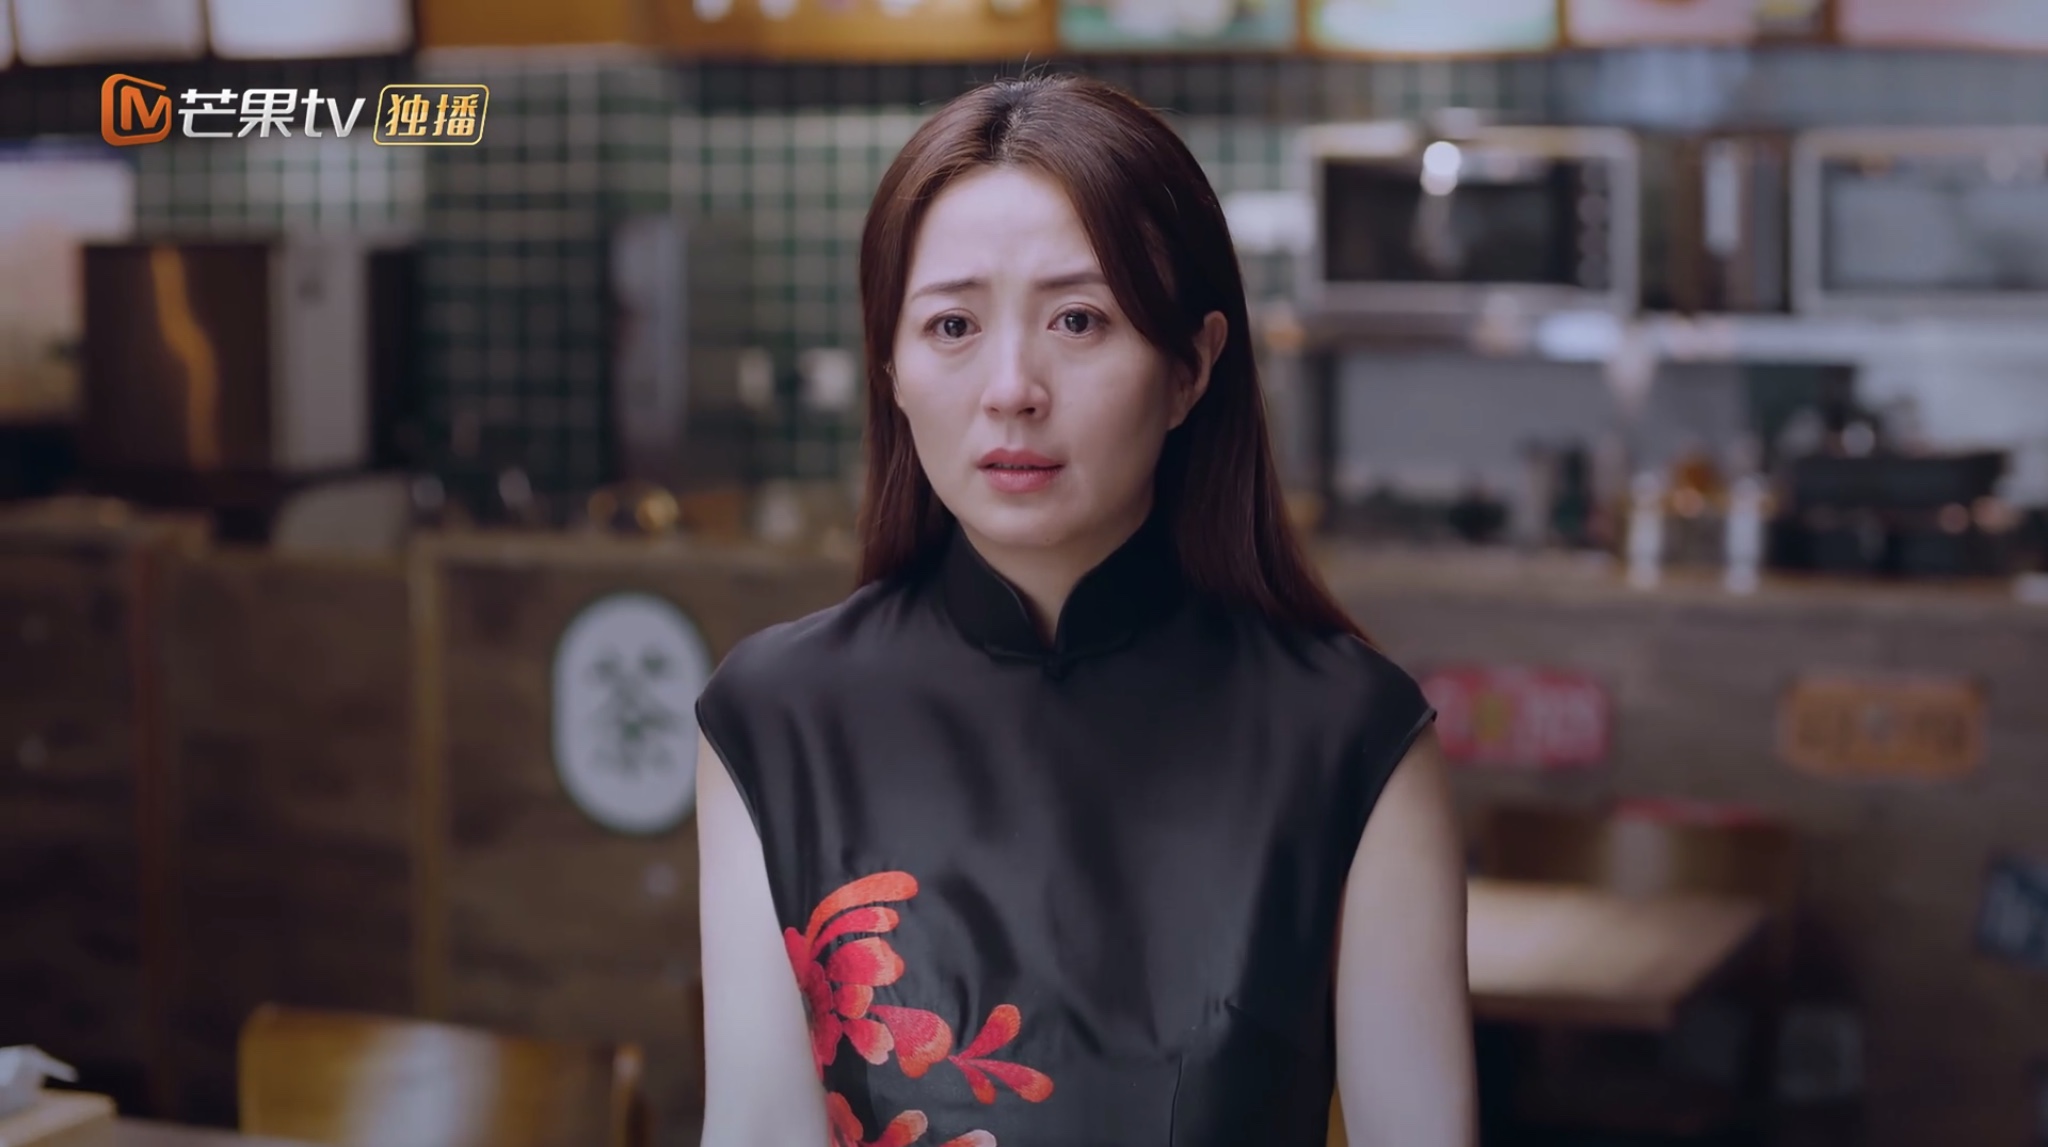 Yi jia ren zhi ming: Folge #1.4 | Season 1 | Episode 4